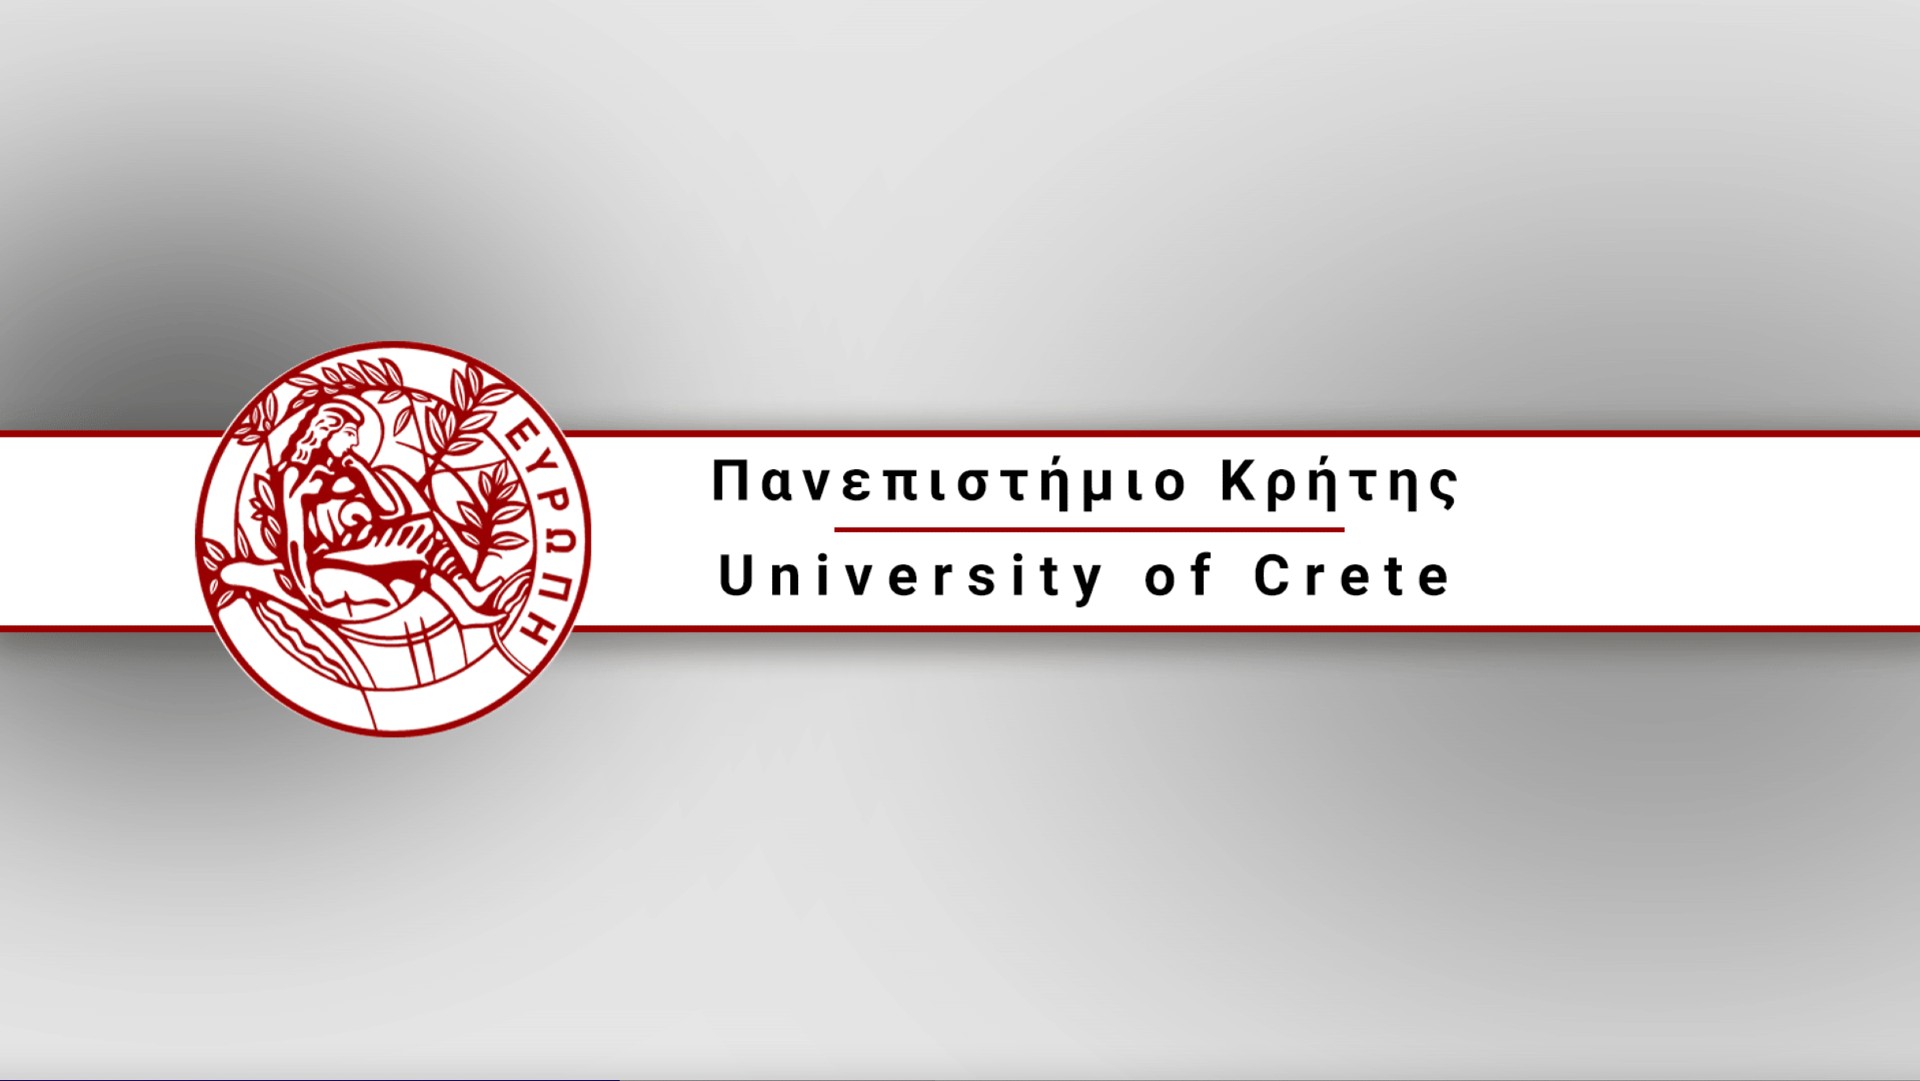  Πανεπιστήμιο Κρήτης: Εβδομάδα υποδοχής των πρωτοετών φοιτητών στο Ρέθυμνο